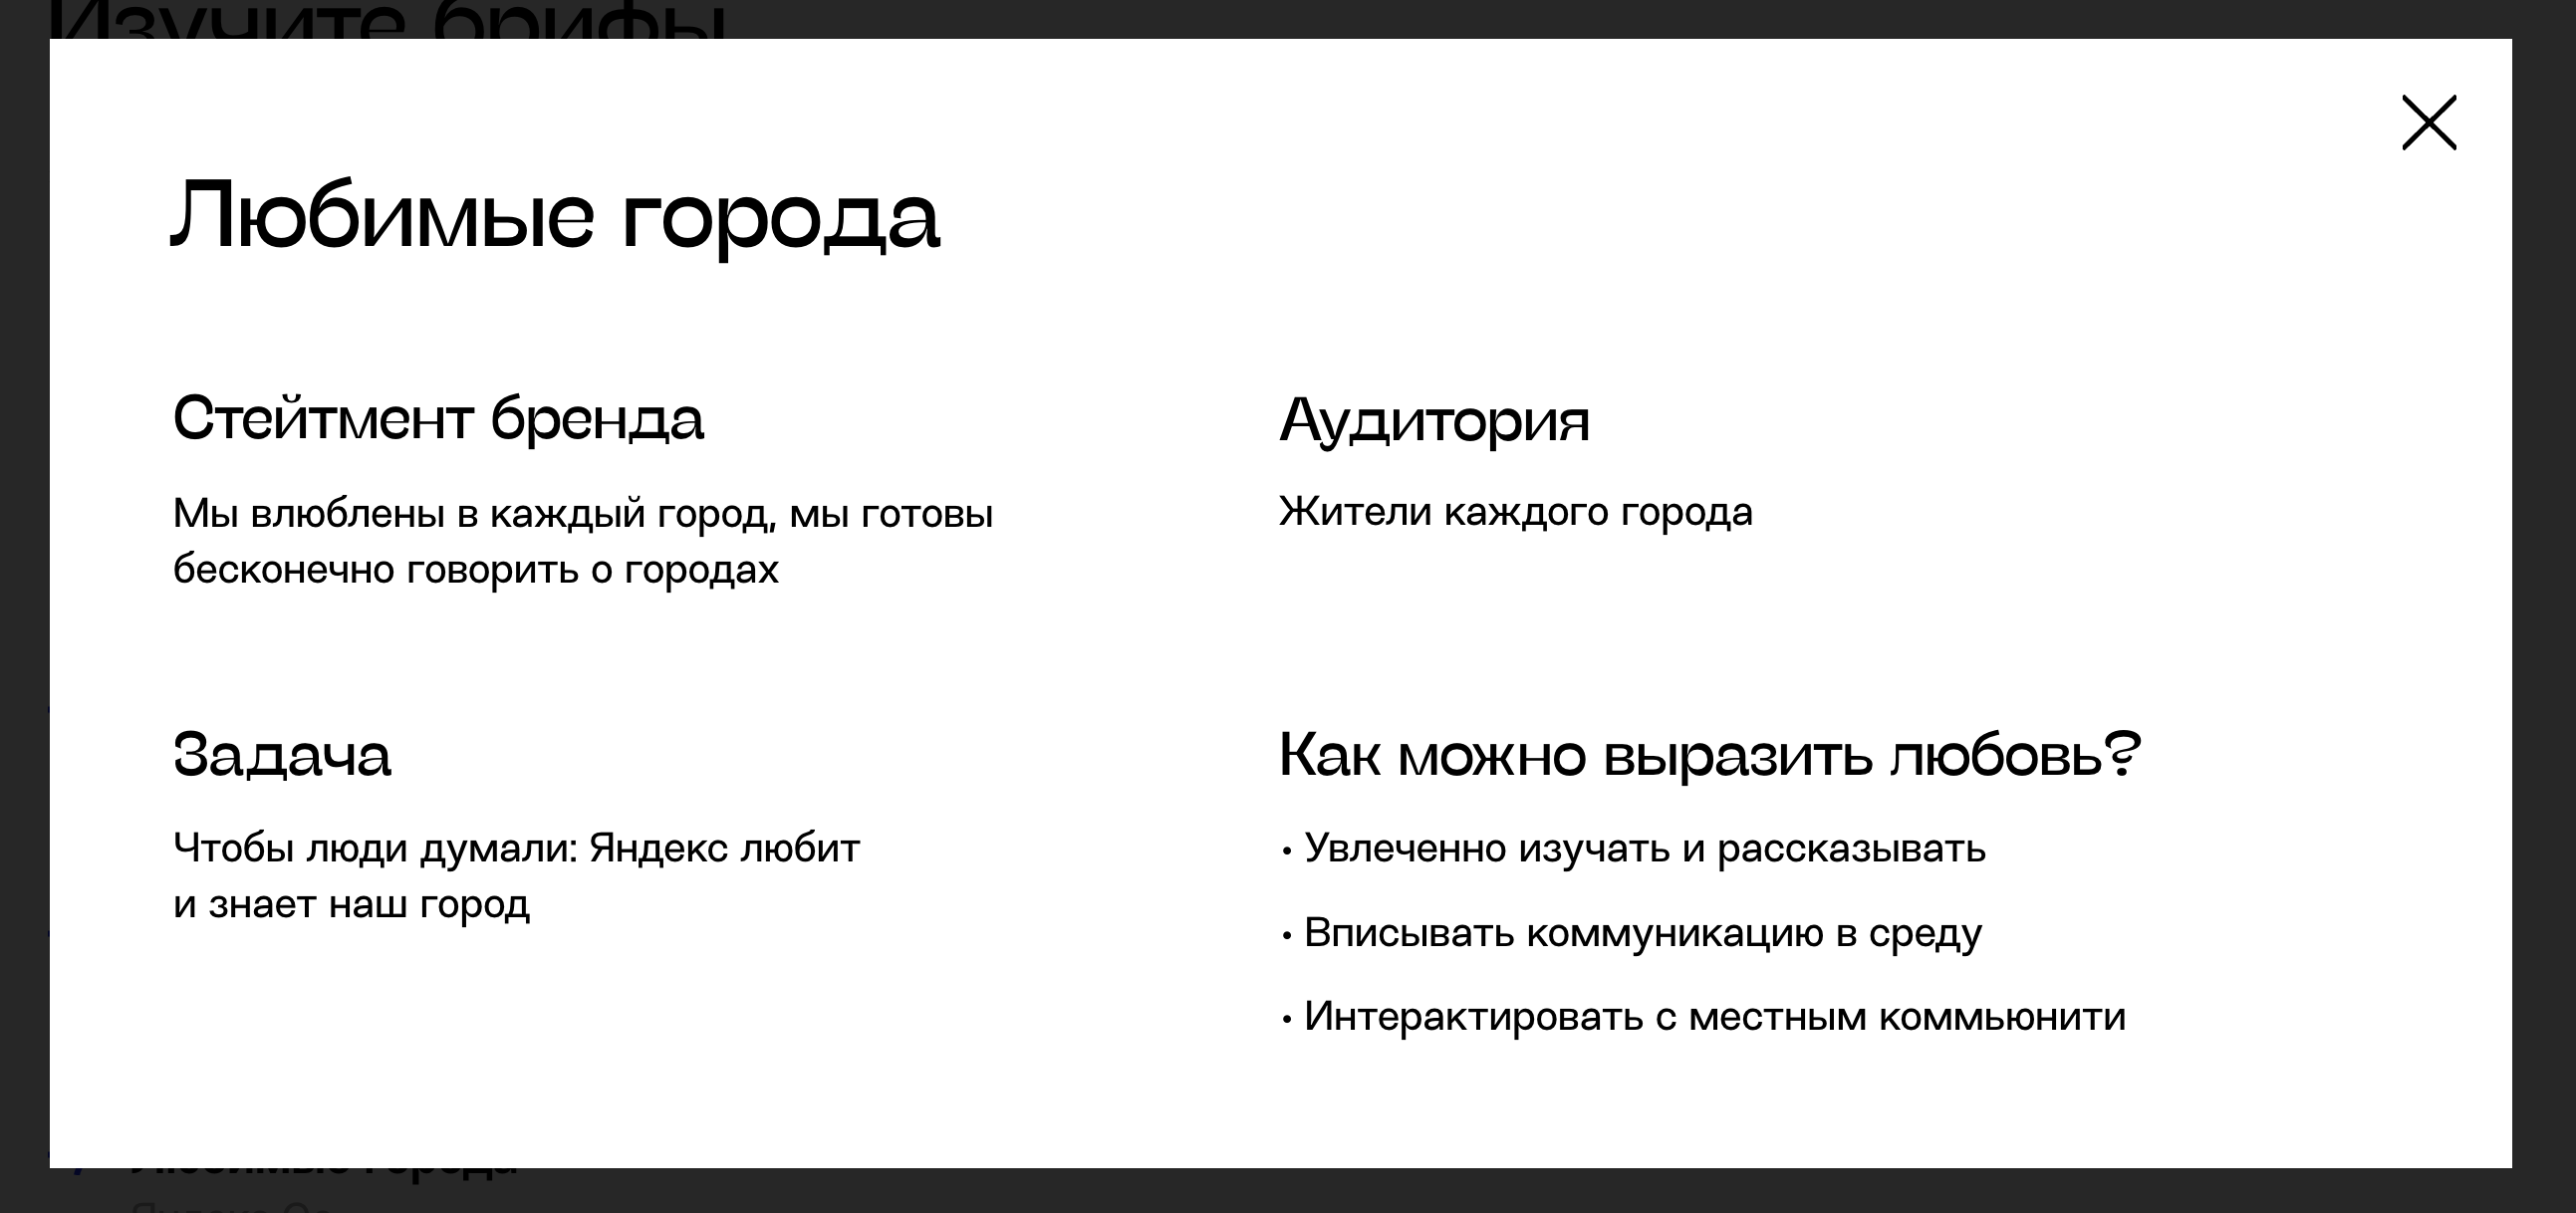 «Яндекс Go» хочет любить города и «интерактировать с местным коммьюнити» - 1